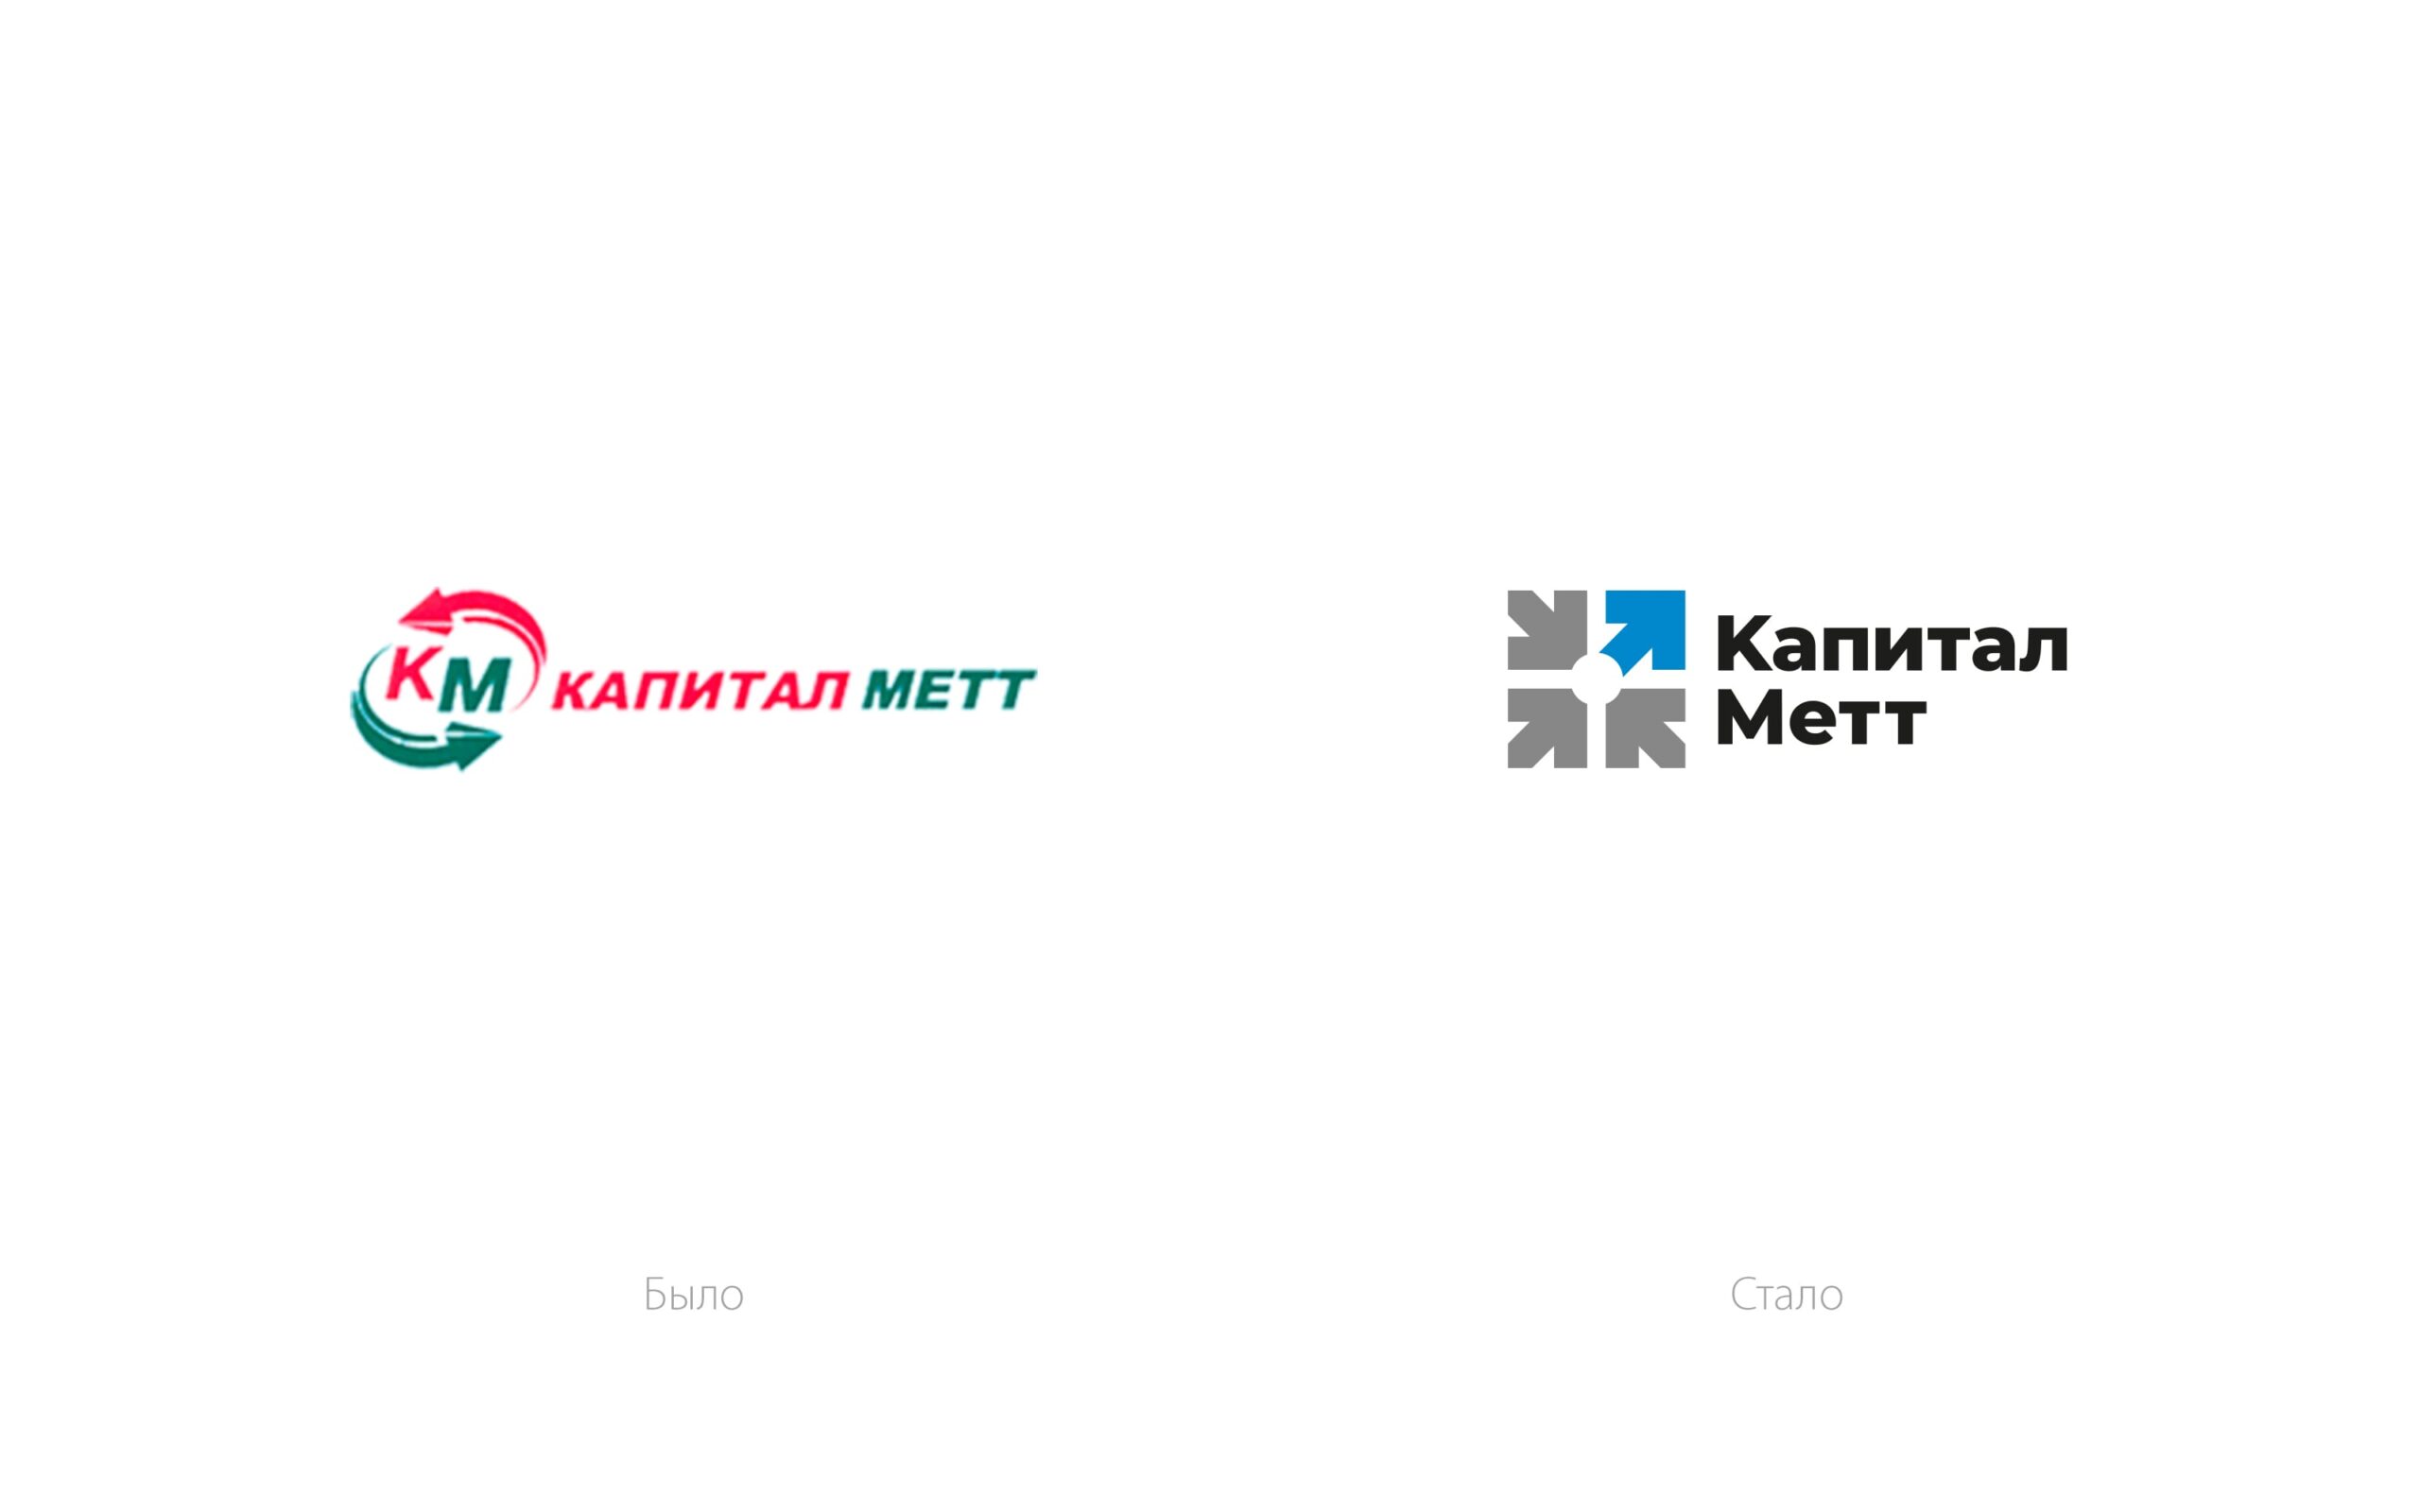 Дизайн логотипа и элементов фирменного стиля «Капитал Метт»